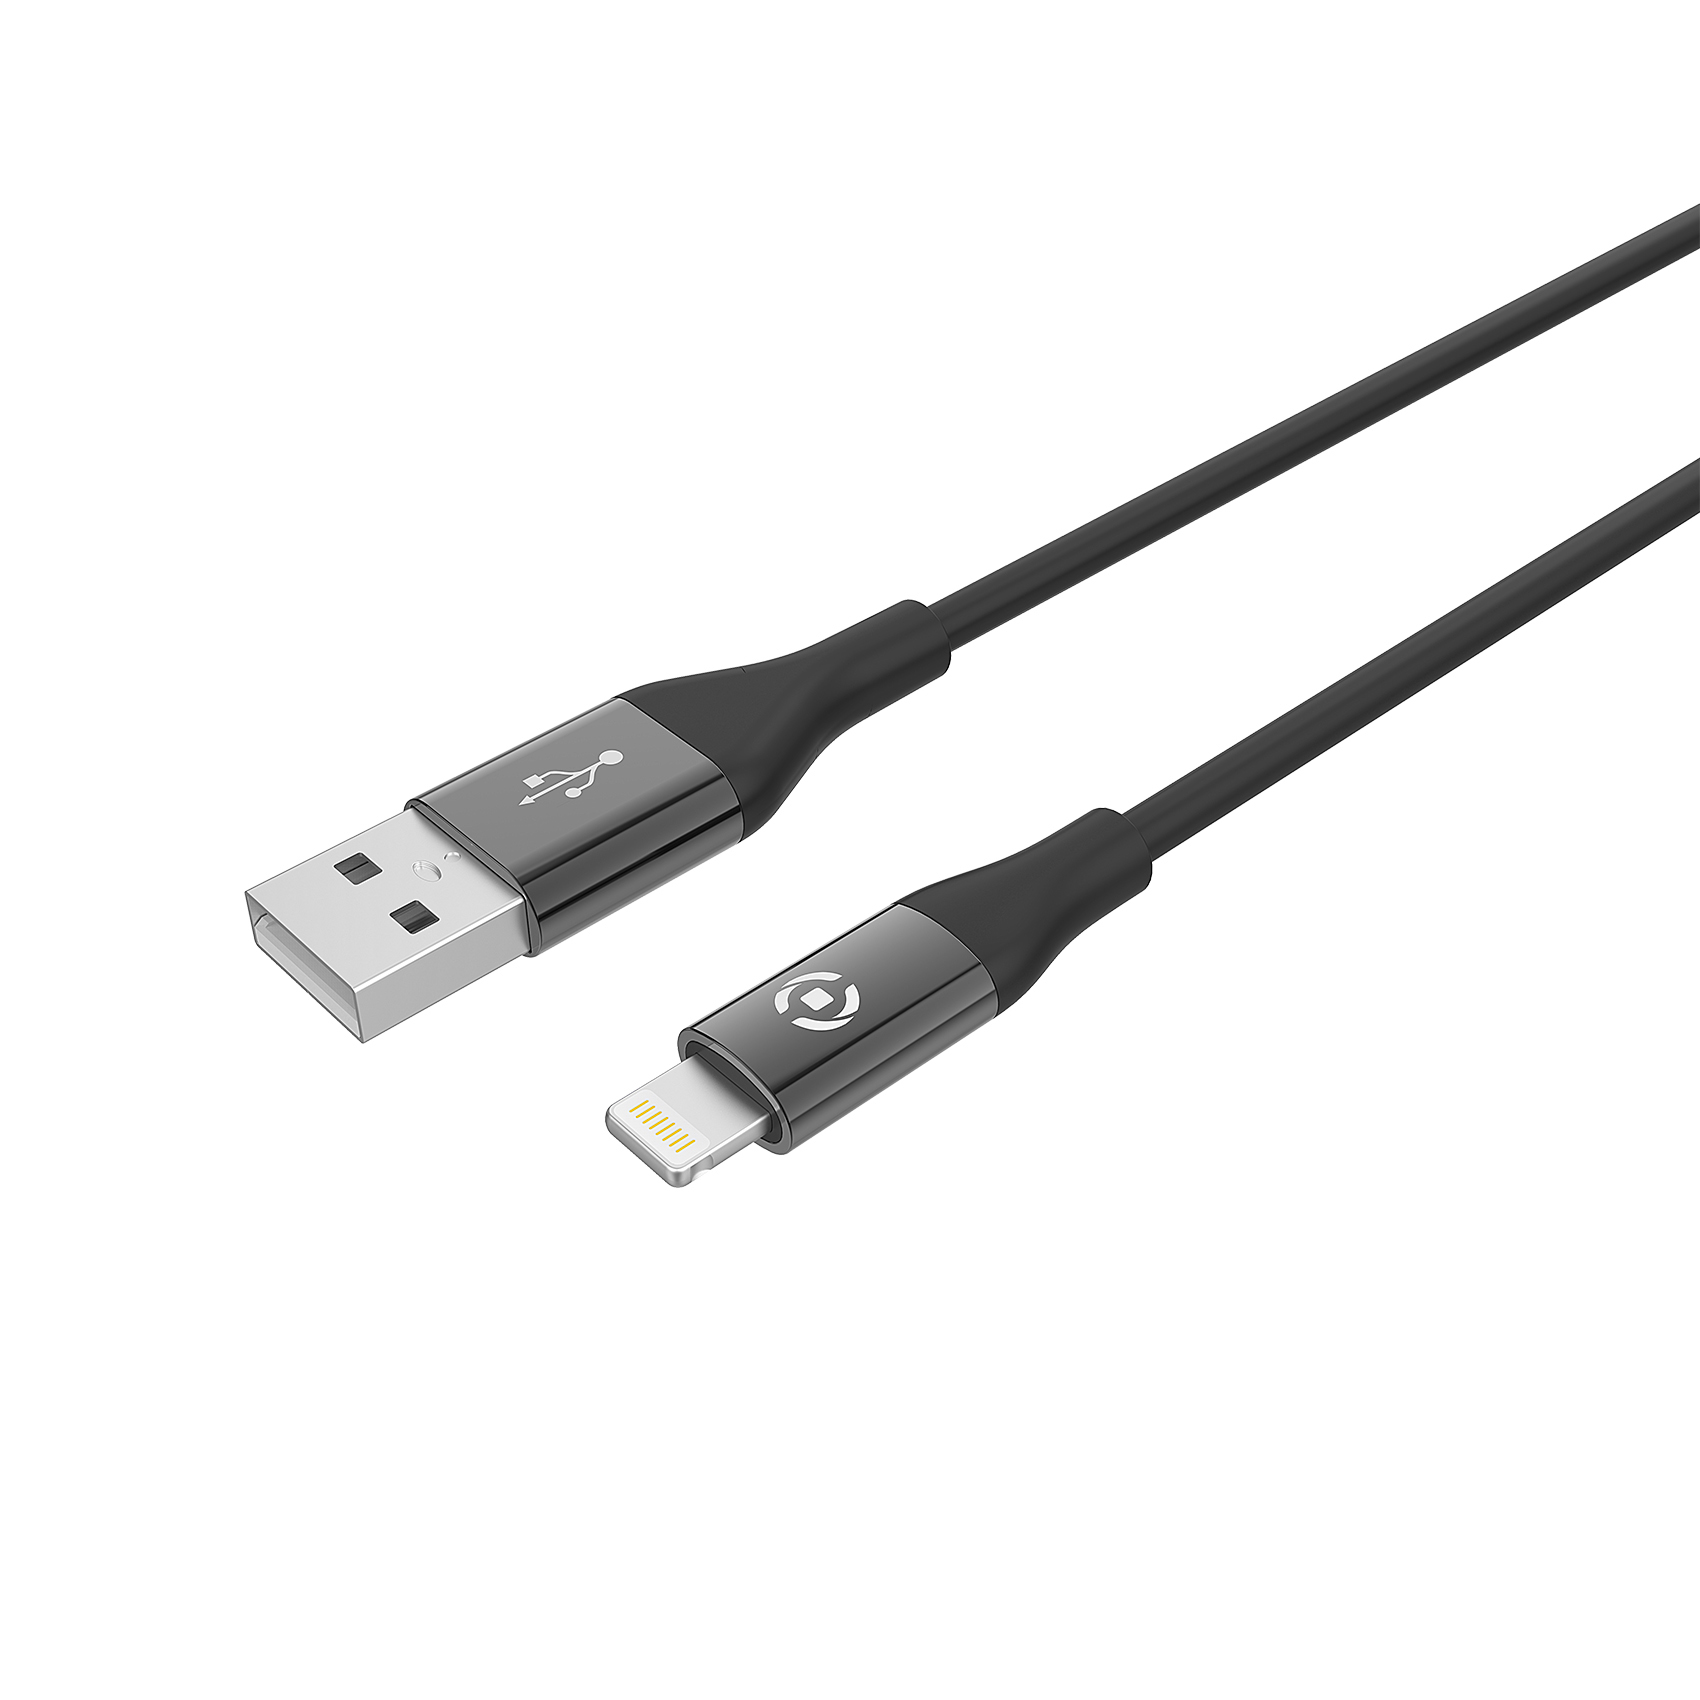 CELLY USB - LIGHTNING kabl za iPhone u CRNOJ boji slika 1